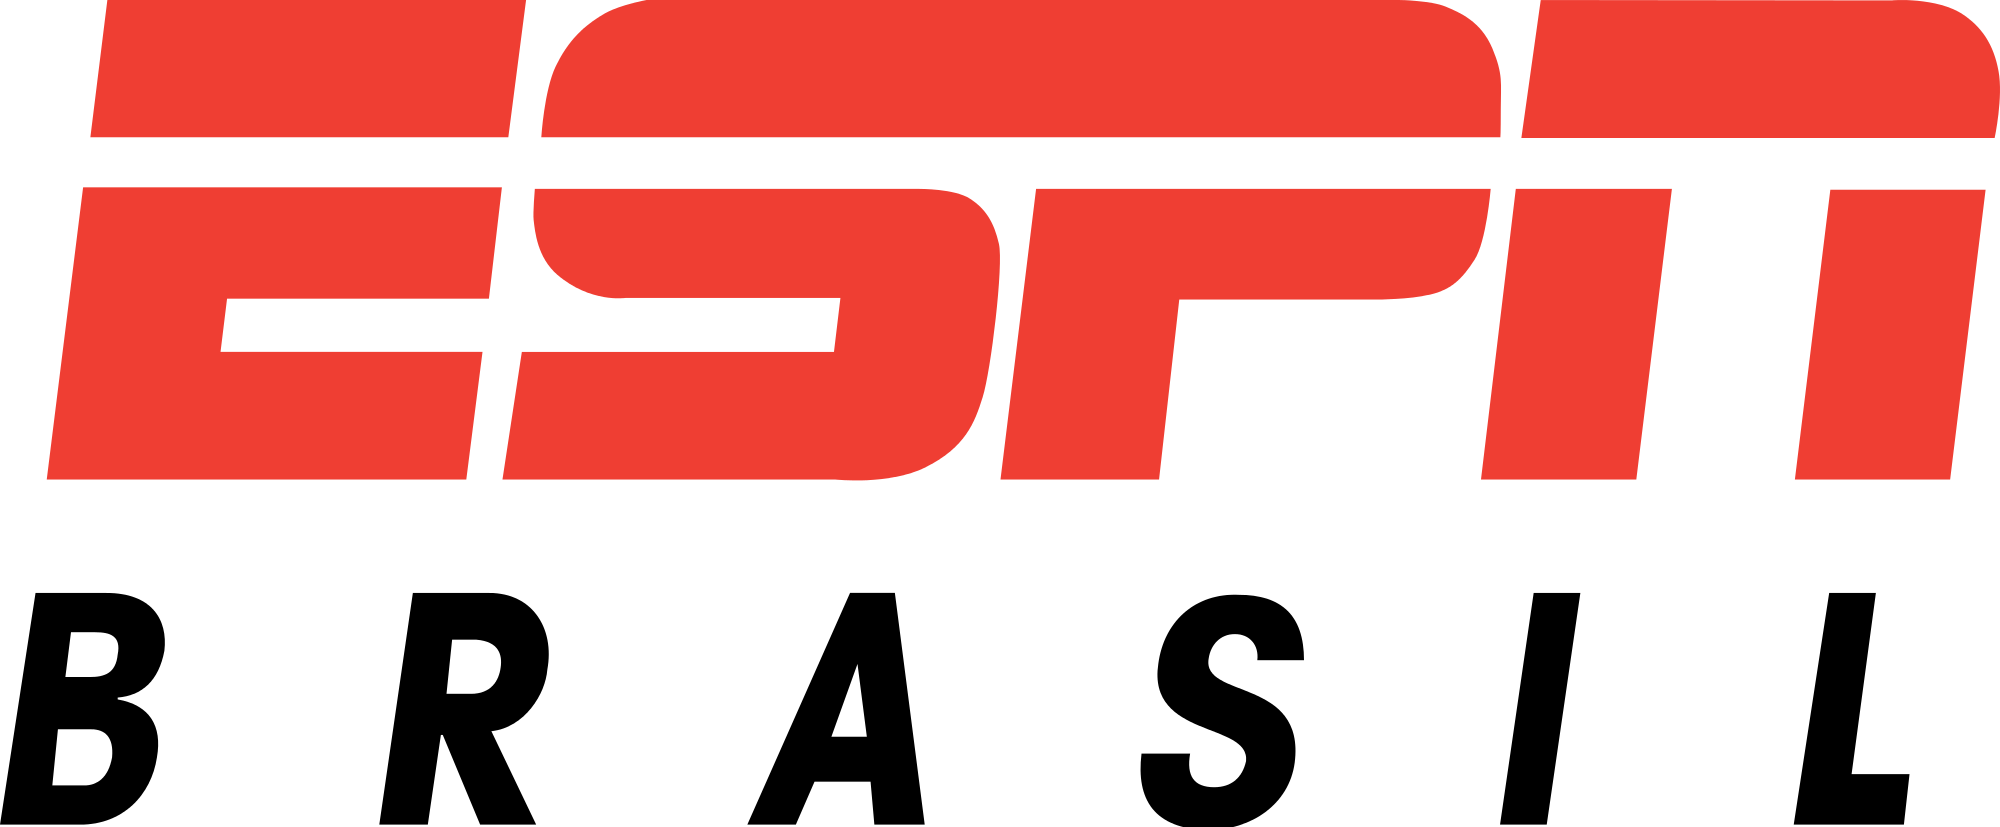 sportscenter logo png